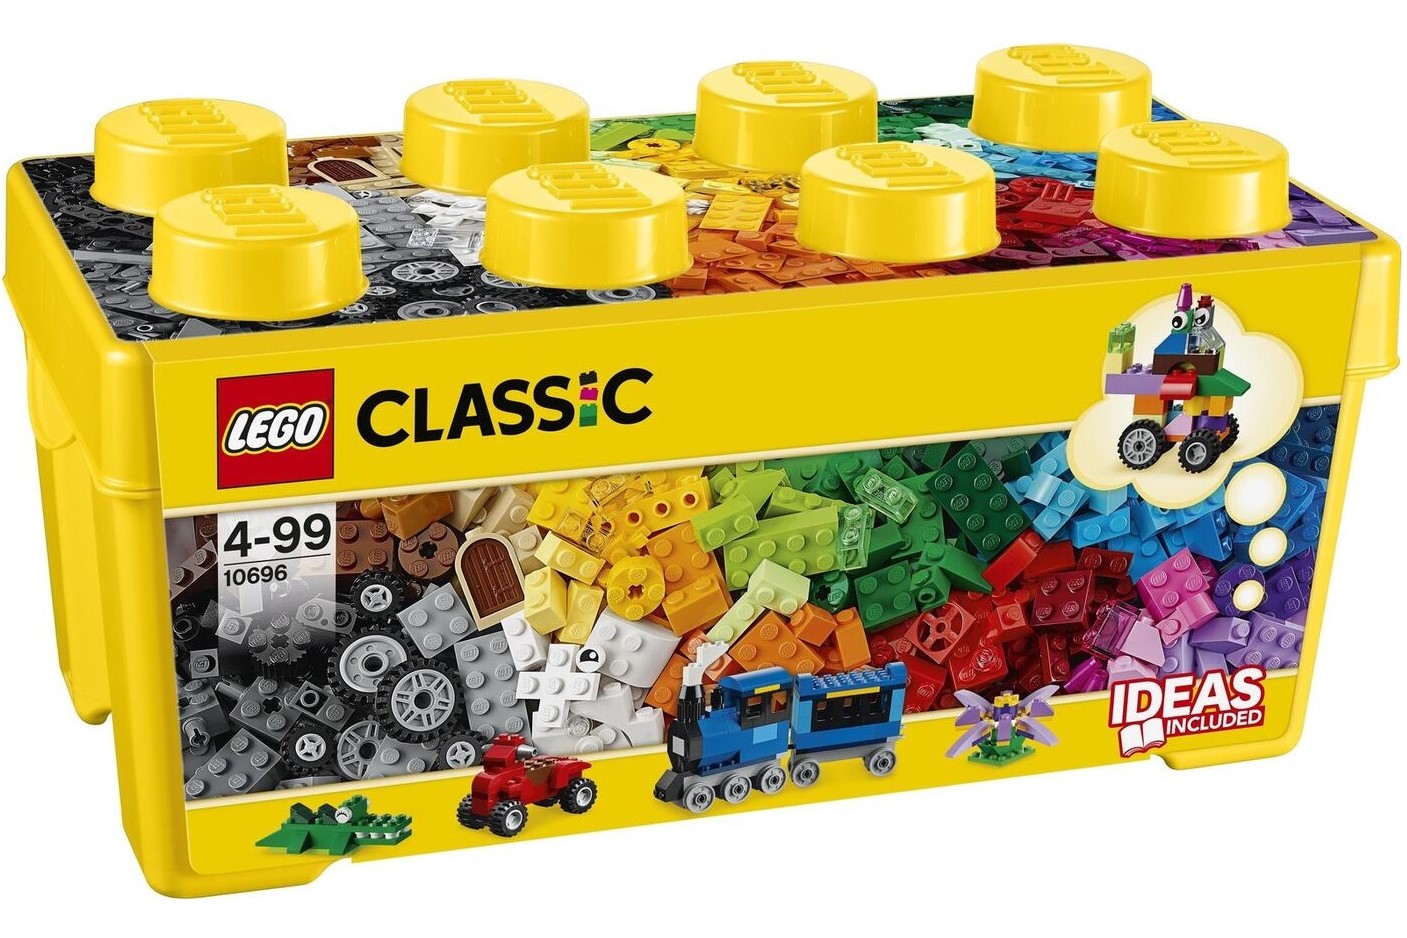 LEGO classic